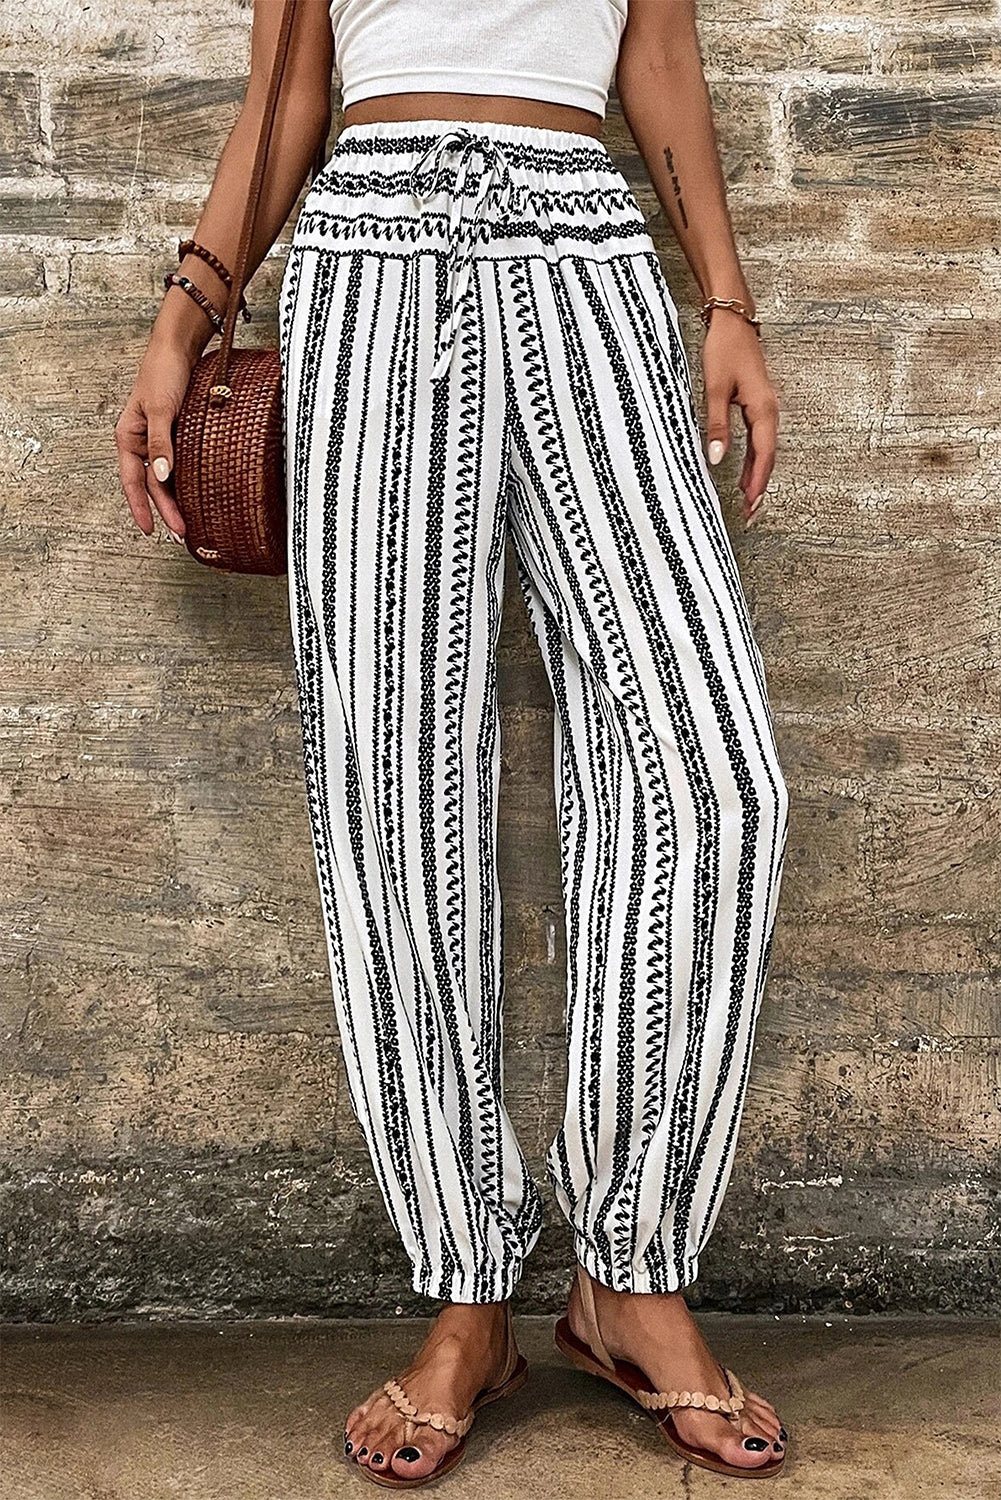 Black Stripe Boho Striped Print Casual Pants